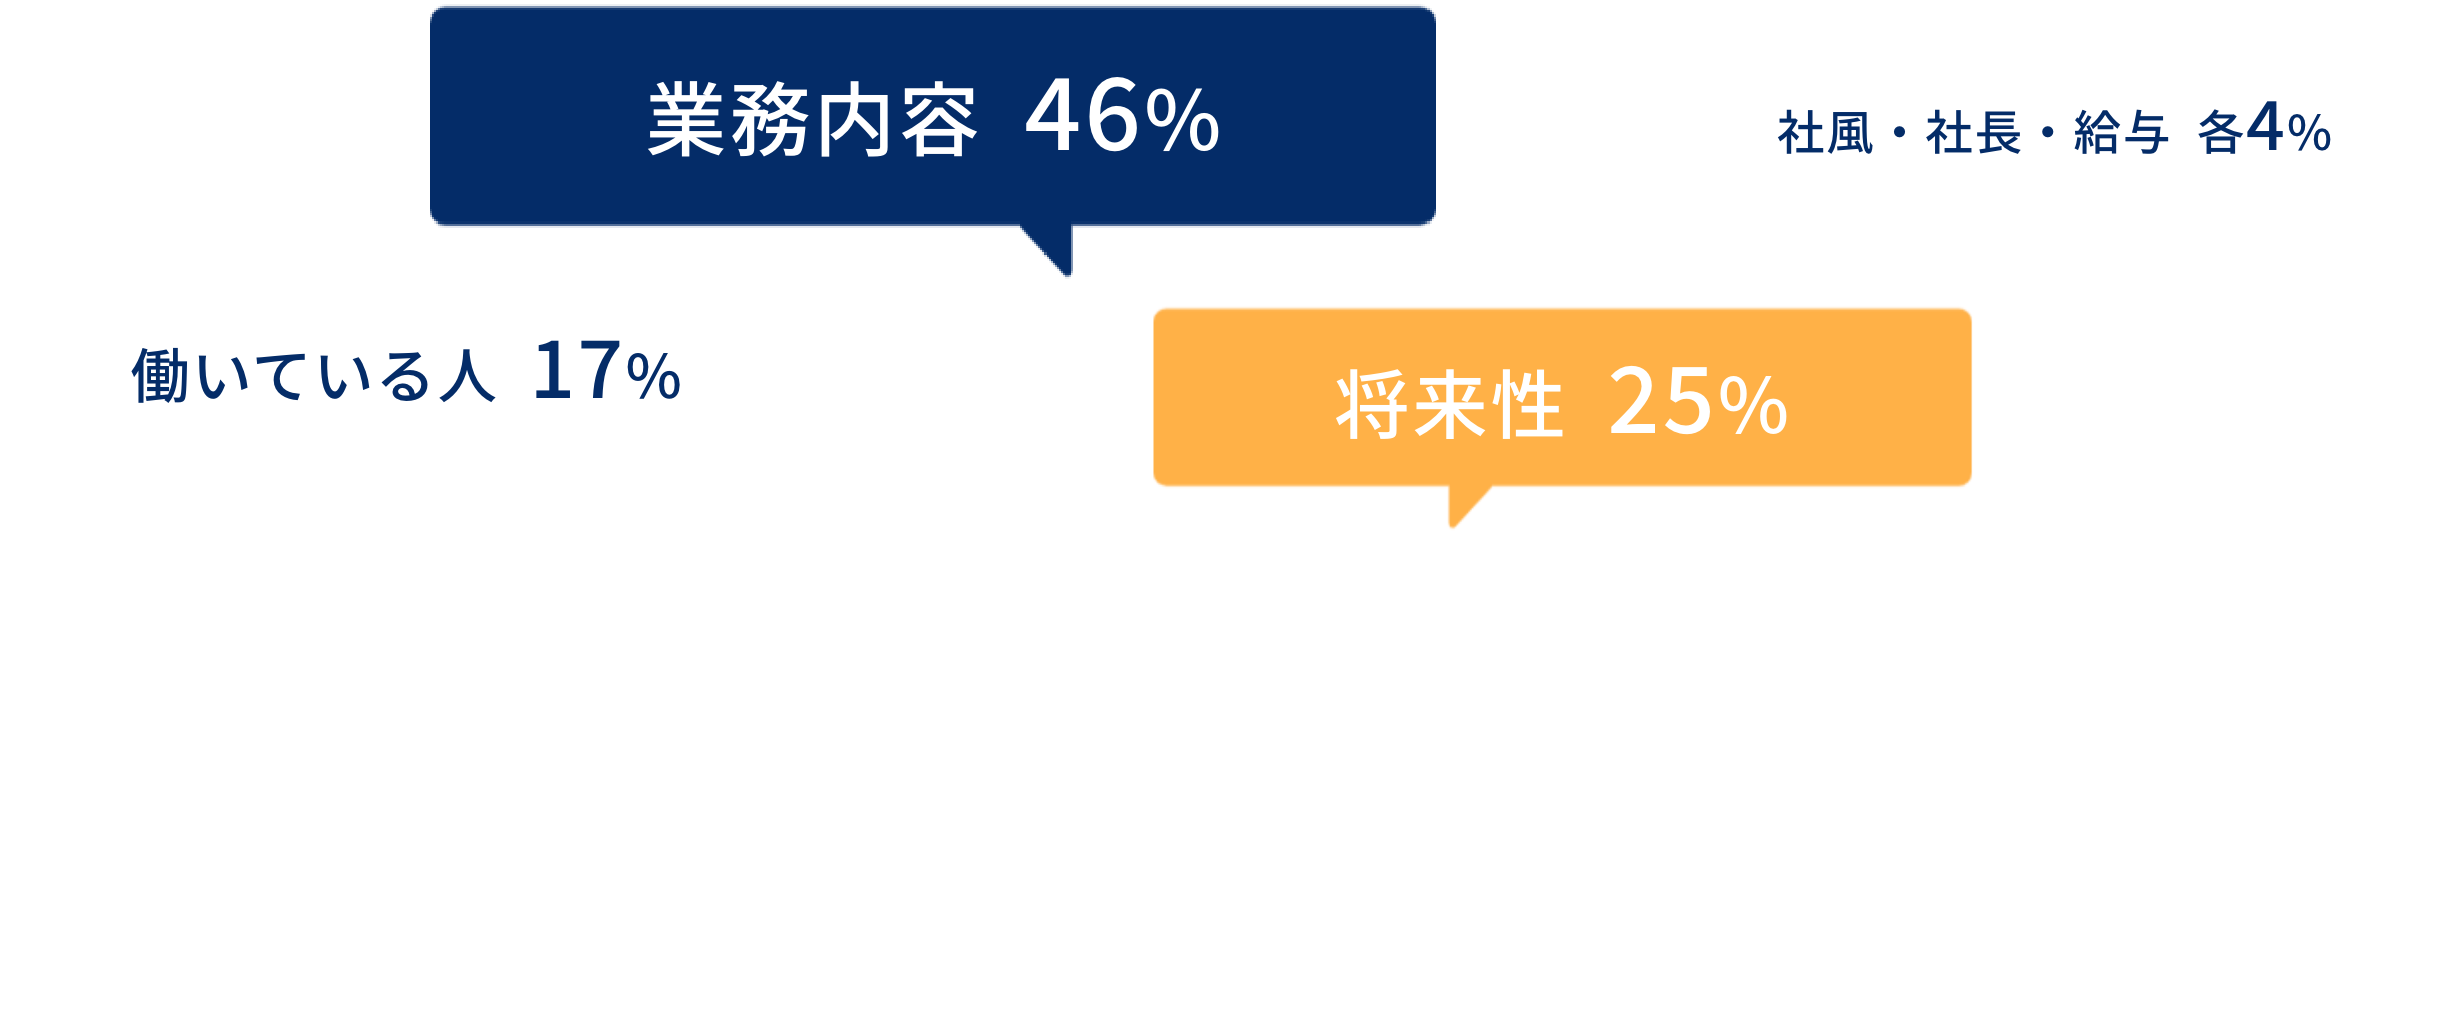 
業務内容:46%,将来性:25%,働いている人:17%,社風・社長・給与 :4%